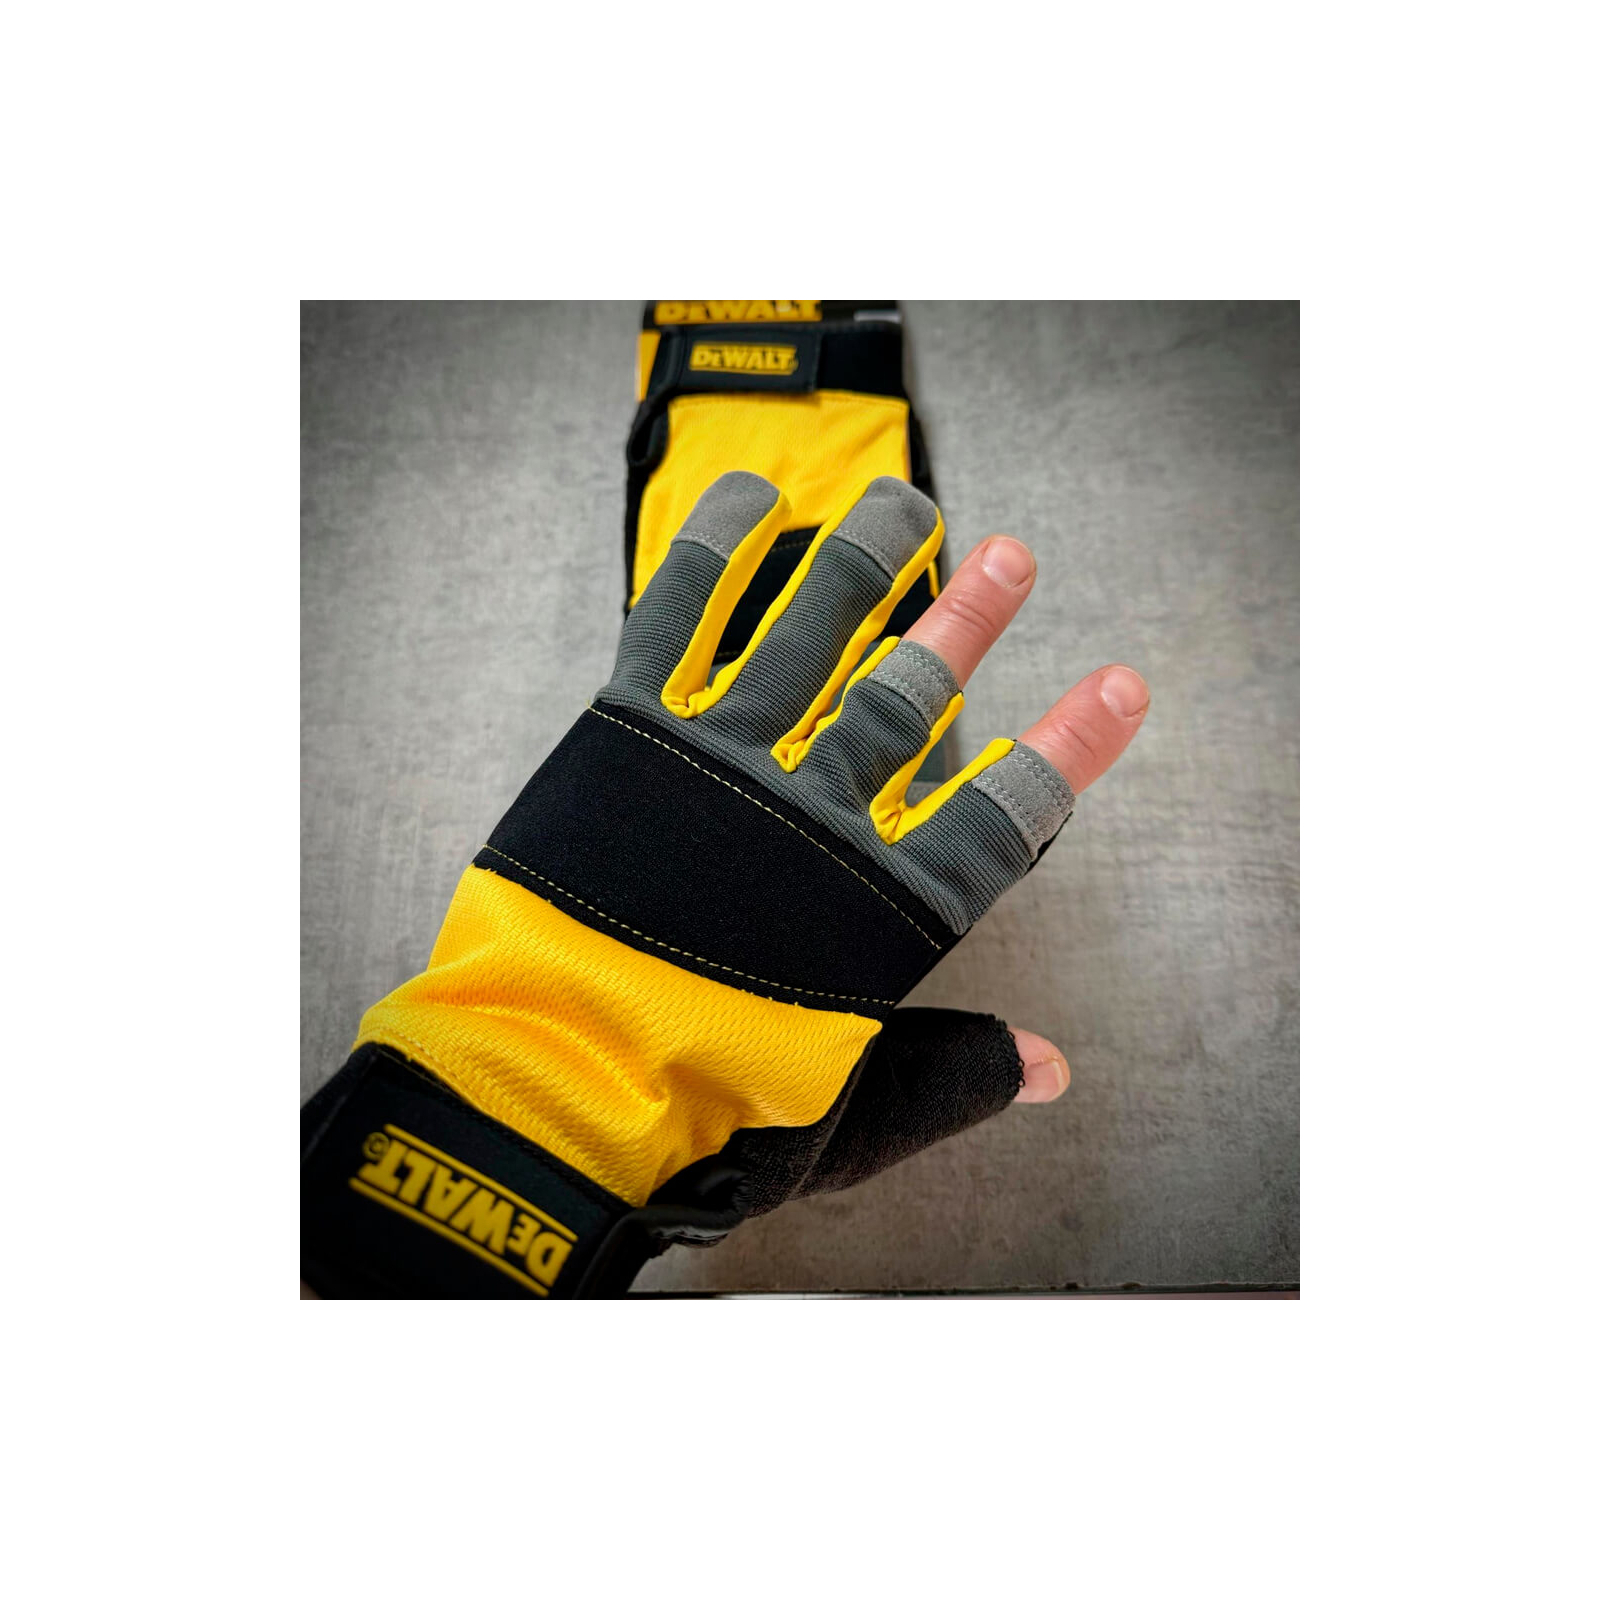 Захисні рукавиці DeWALT частково відкриті, розм. L/9, з накладками на долоні (DPG214L) зображення 6